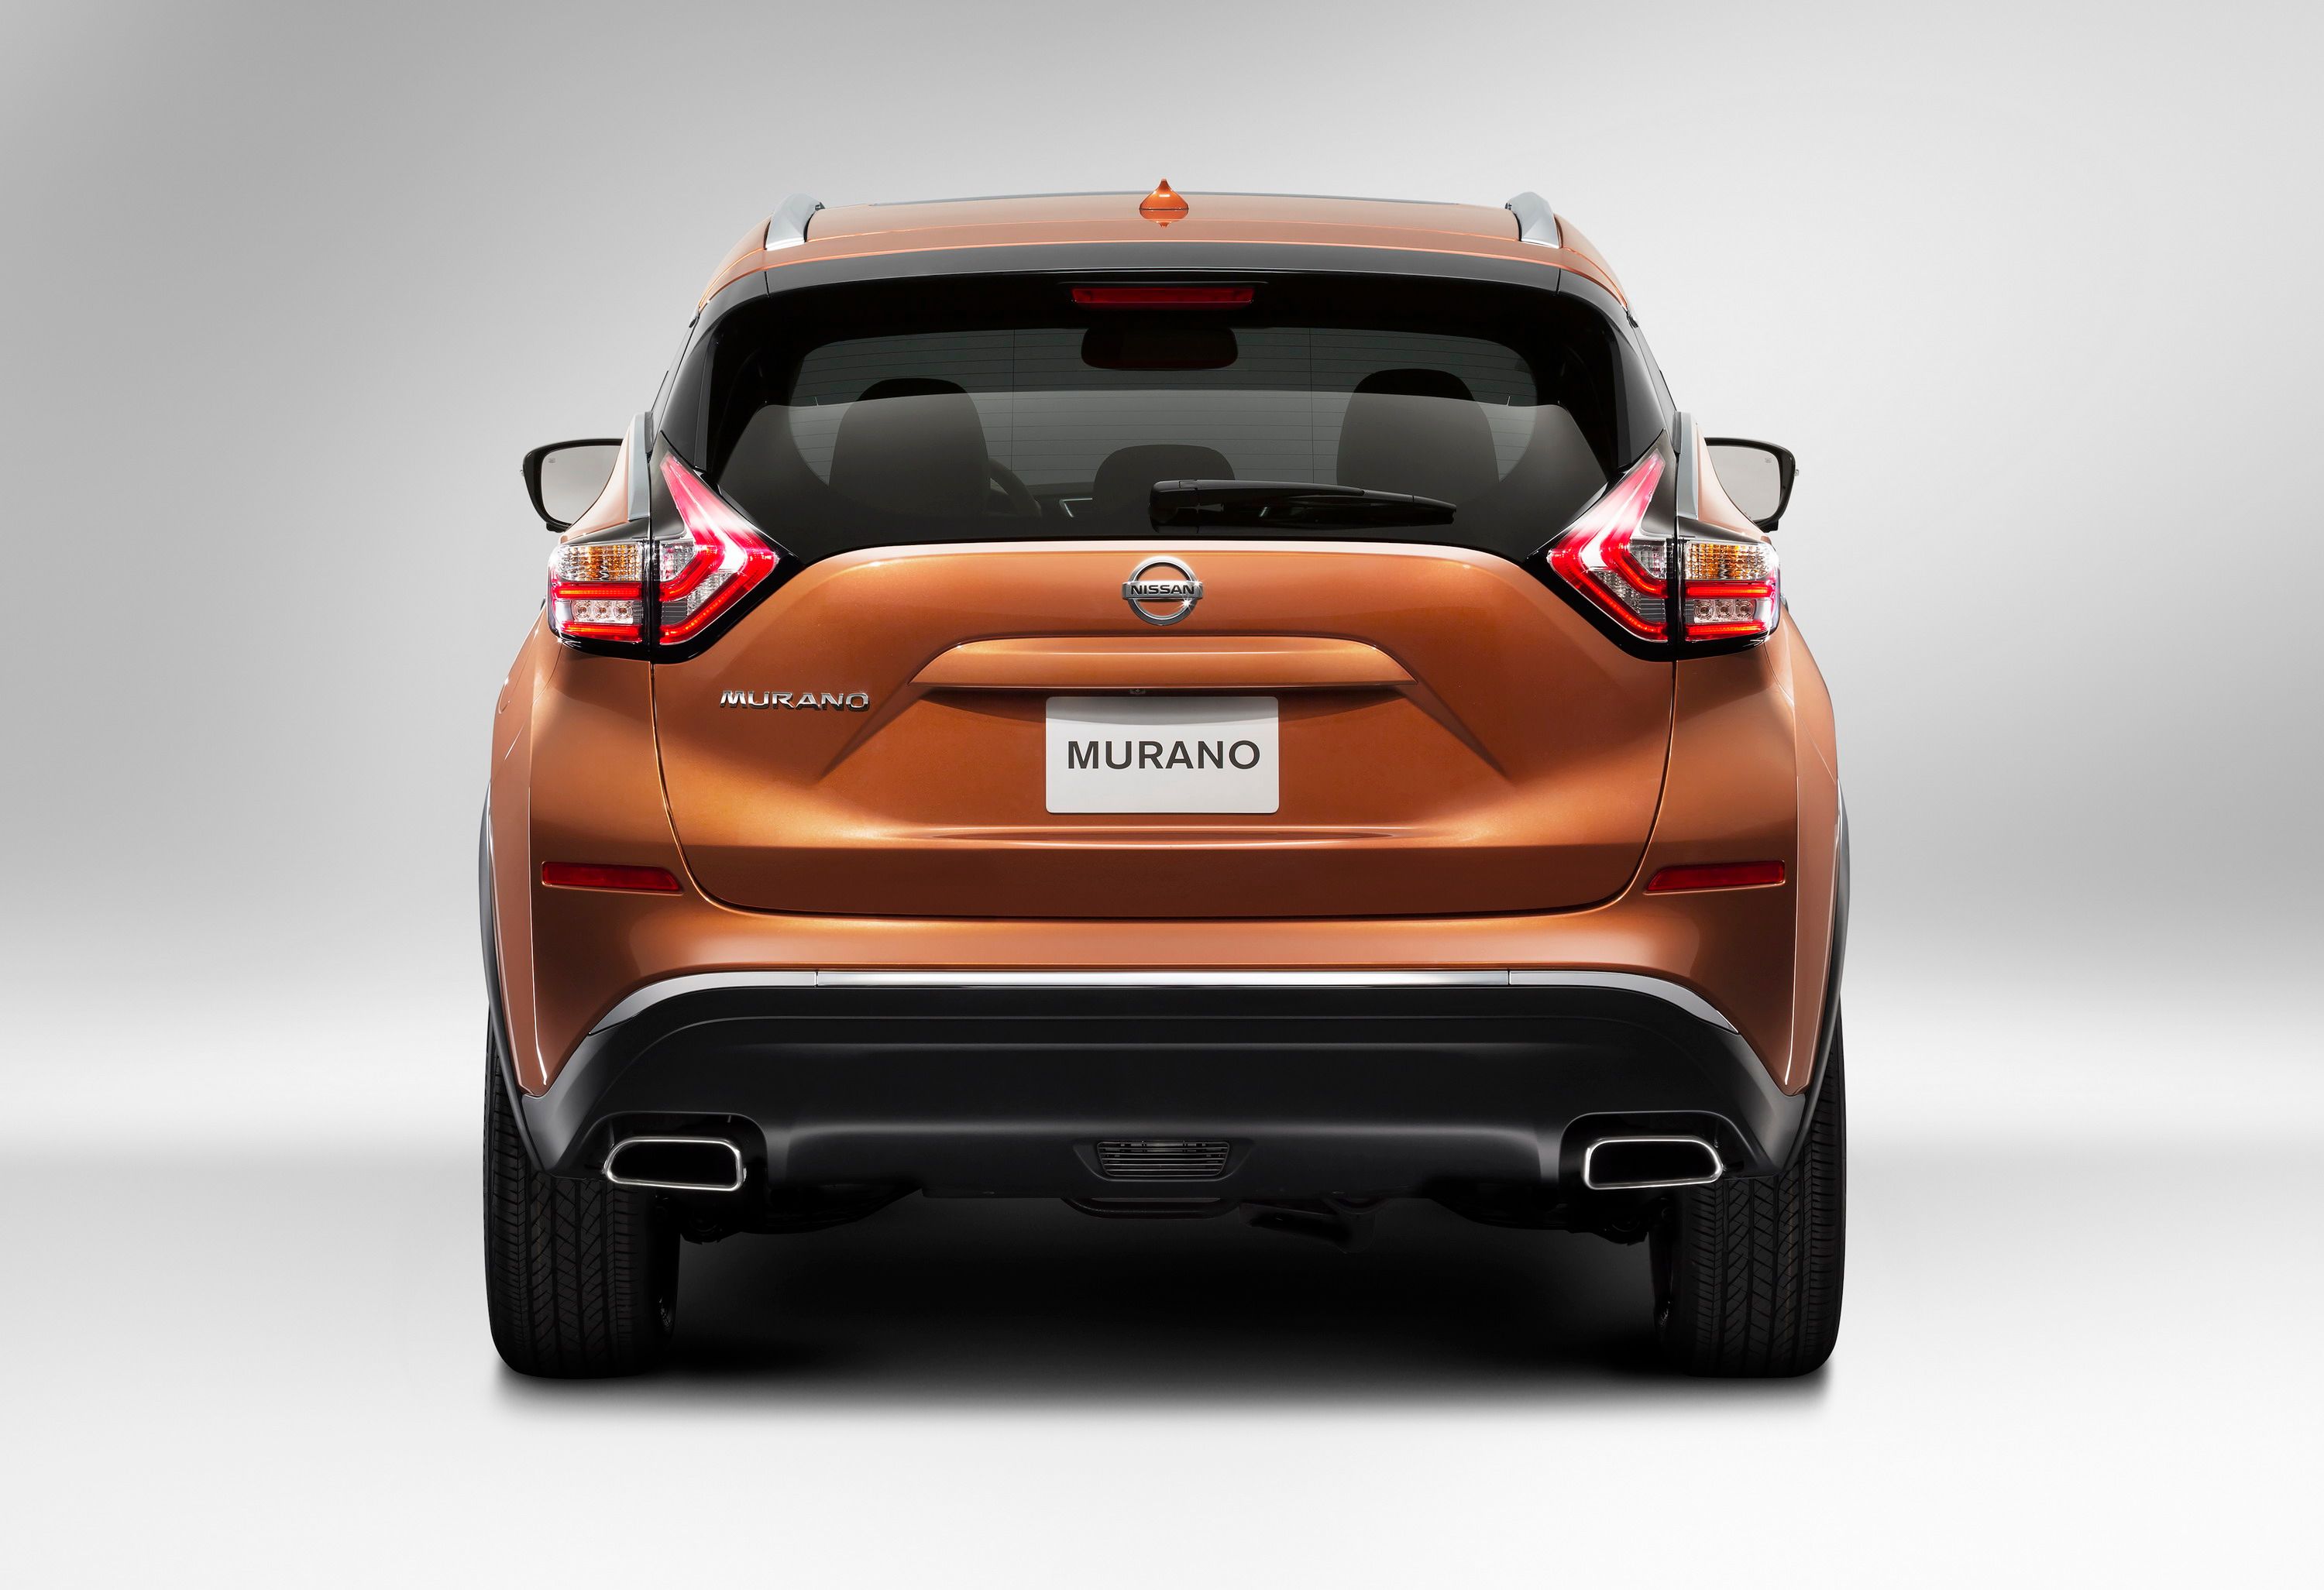 2015 - 2016 Nissan Murano